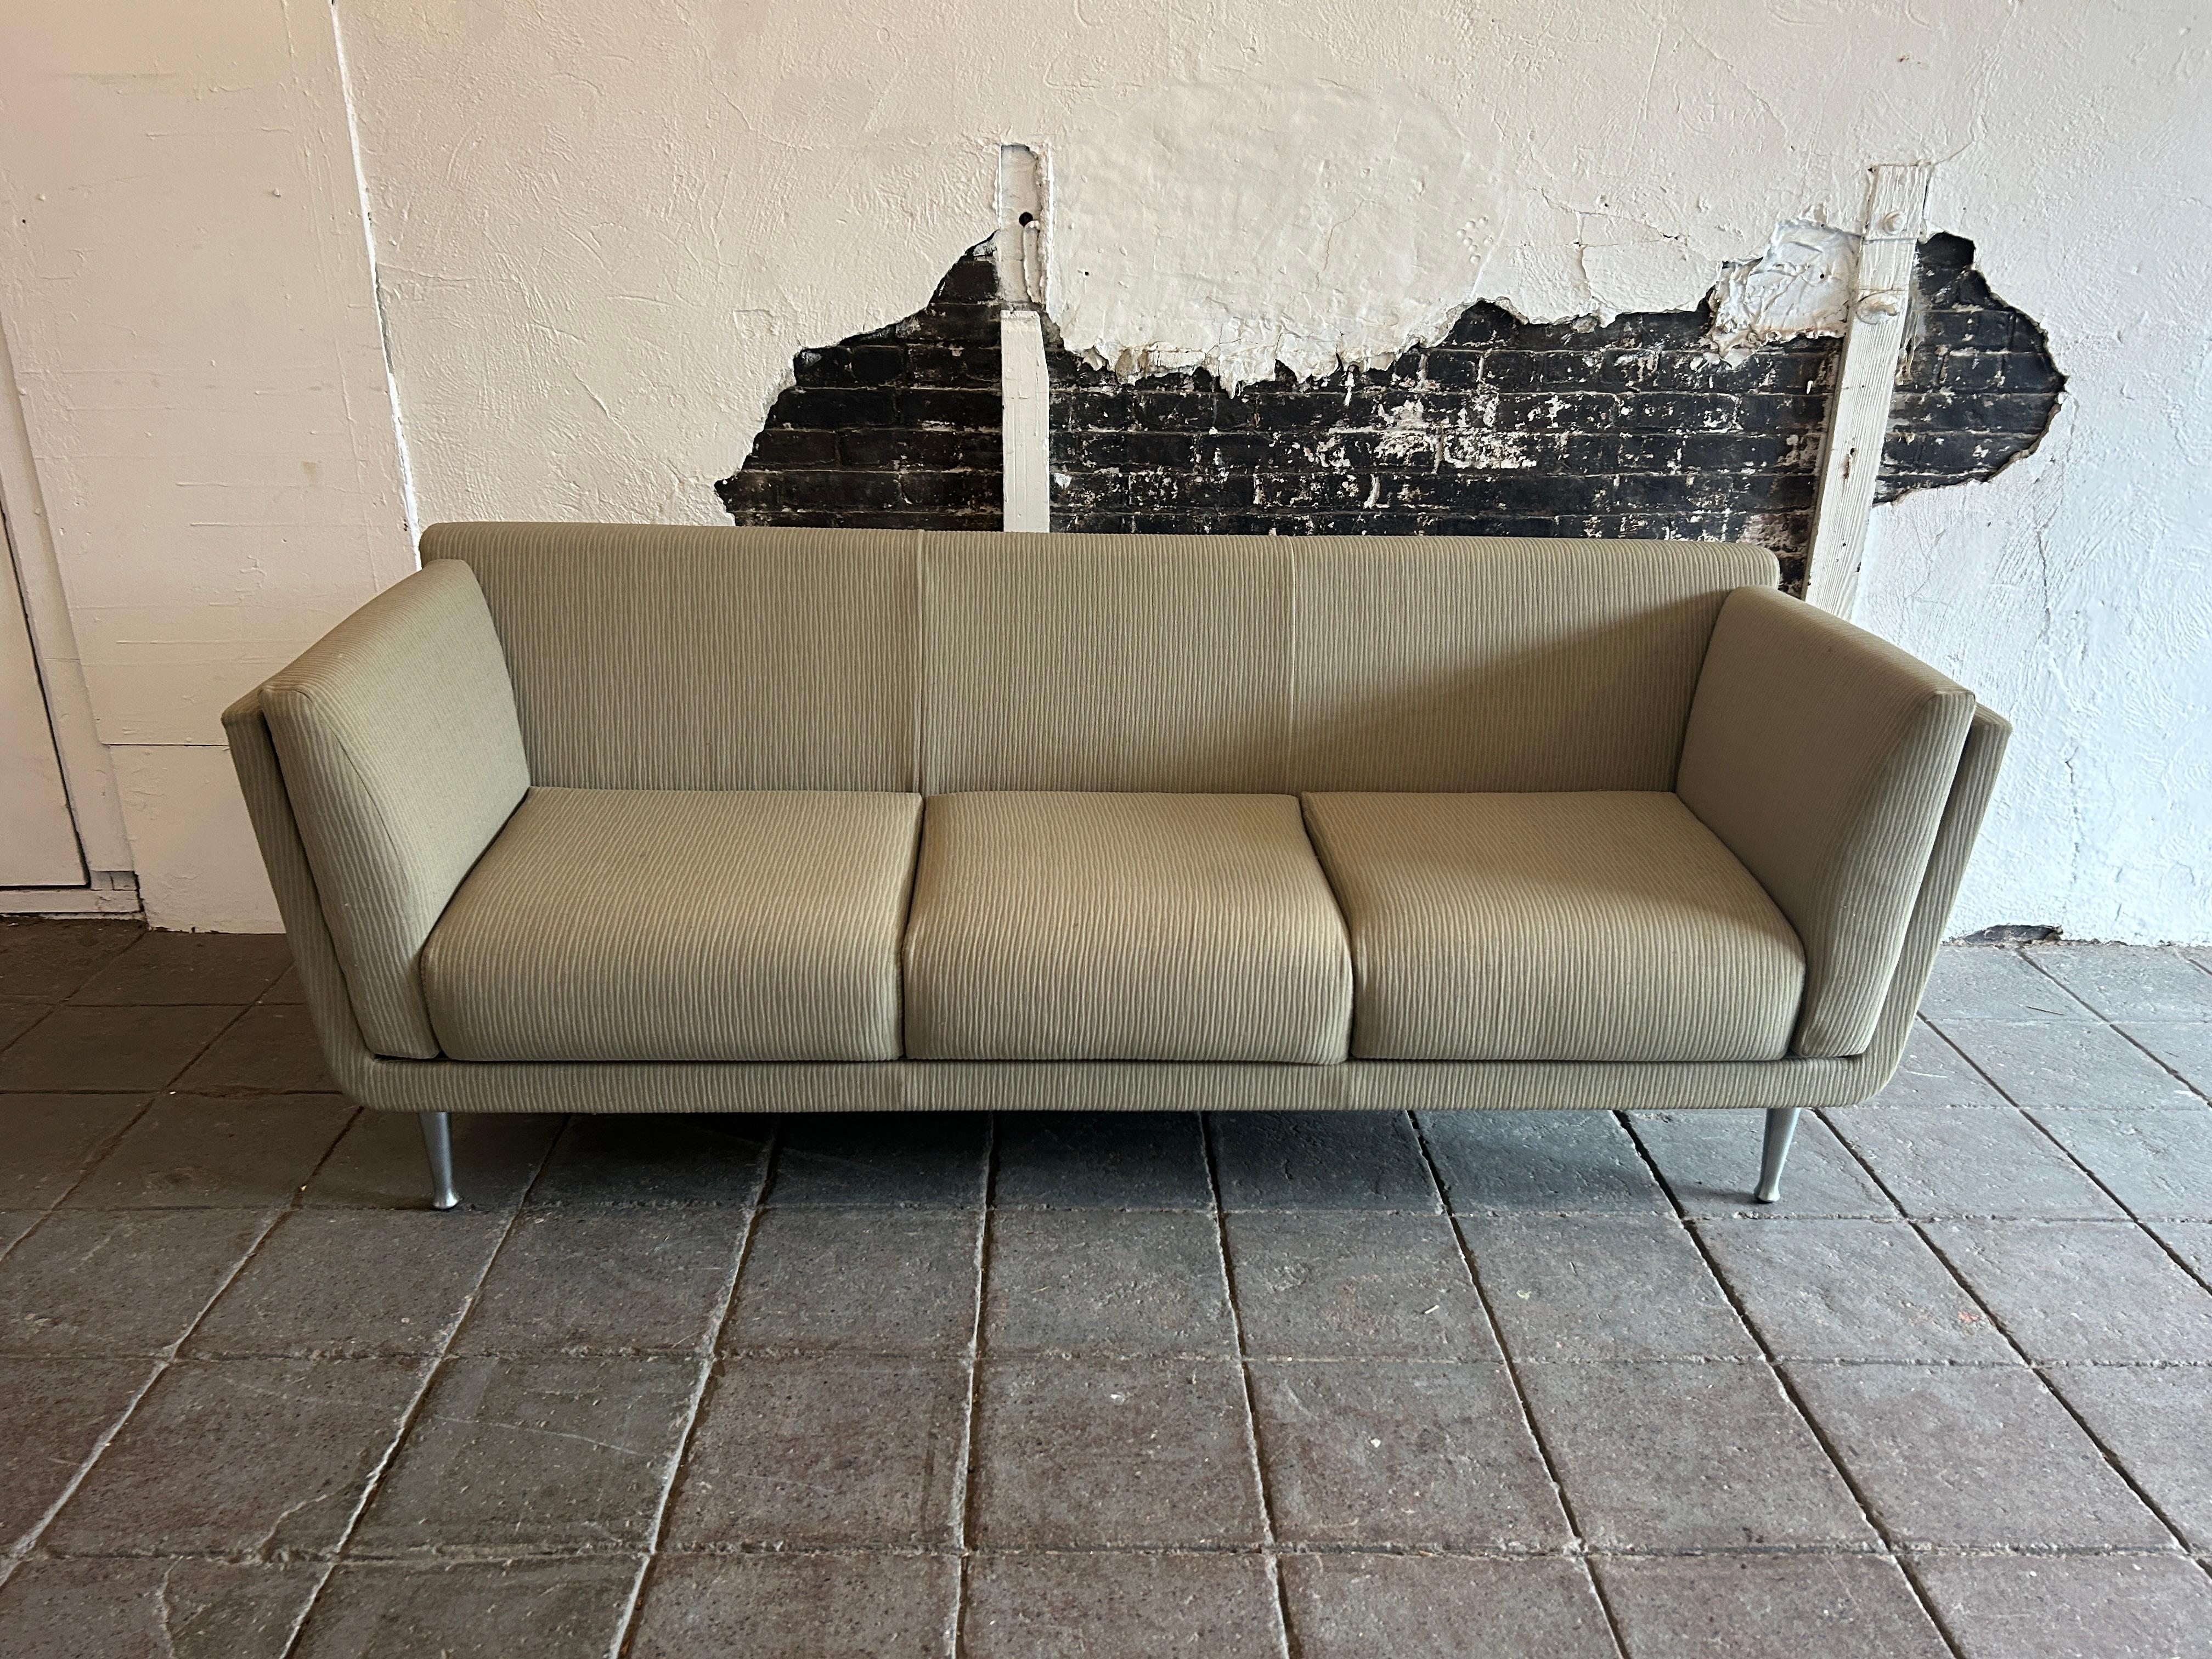 Dieses Sofa Farbe gedämpft Sage grün / hellbraun Polsterung mit einer vertikalen Textur und heller Holzschale, die auf (4) massive Aluminium Beine sitzt. Dieses einzigartige 